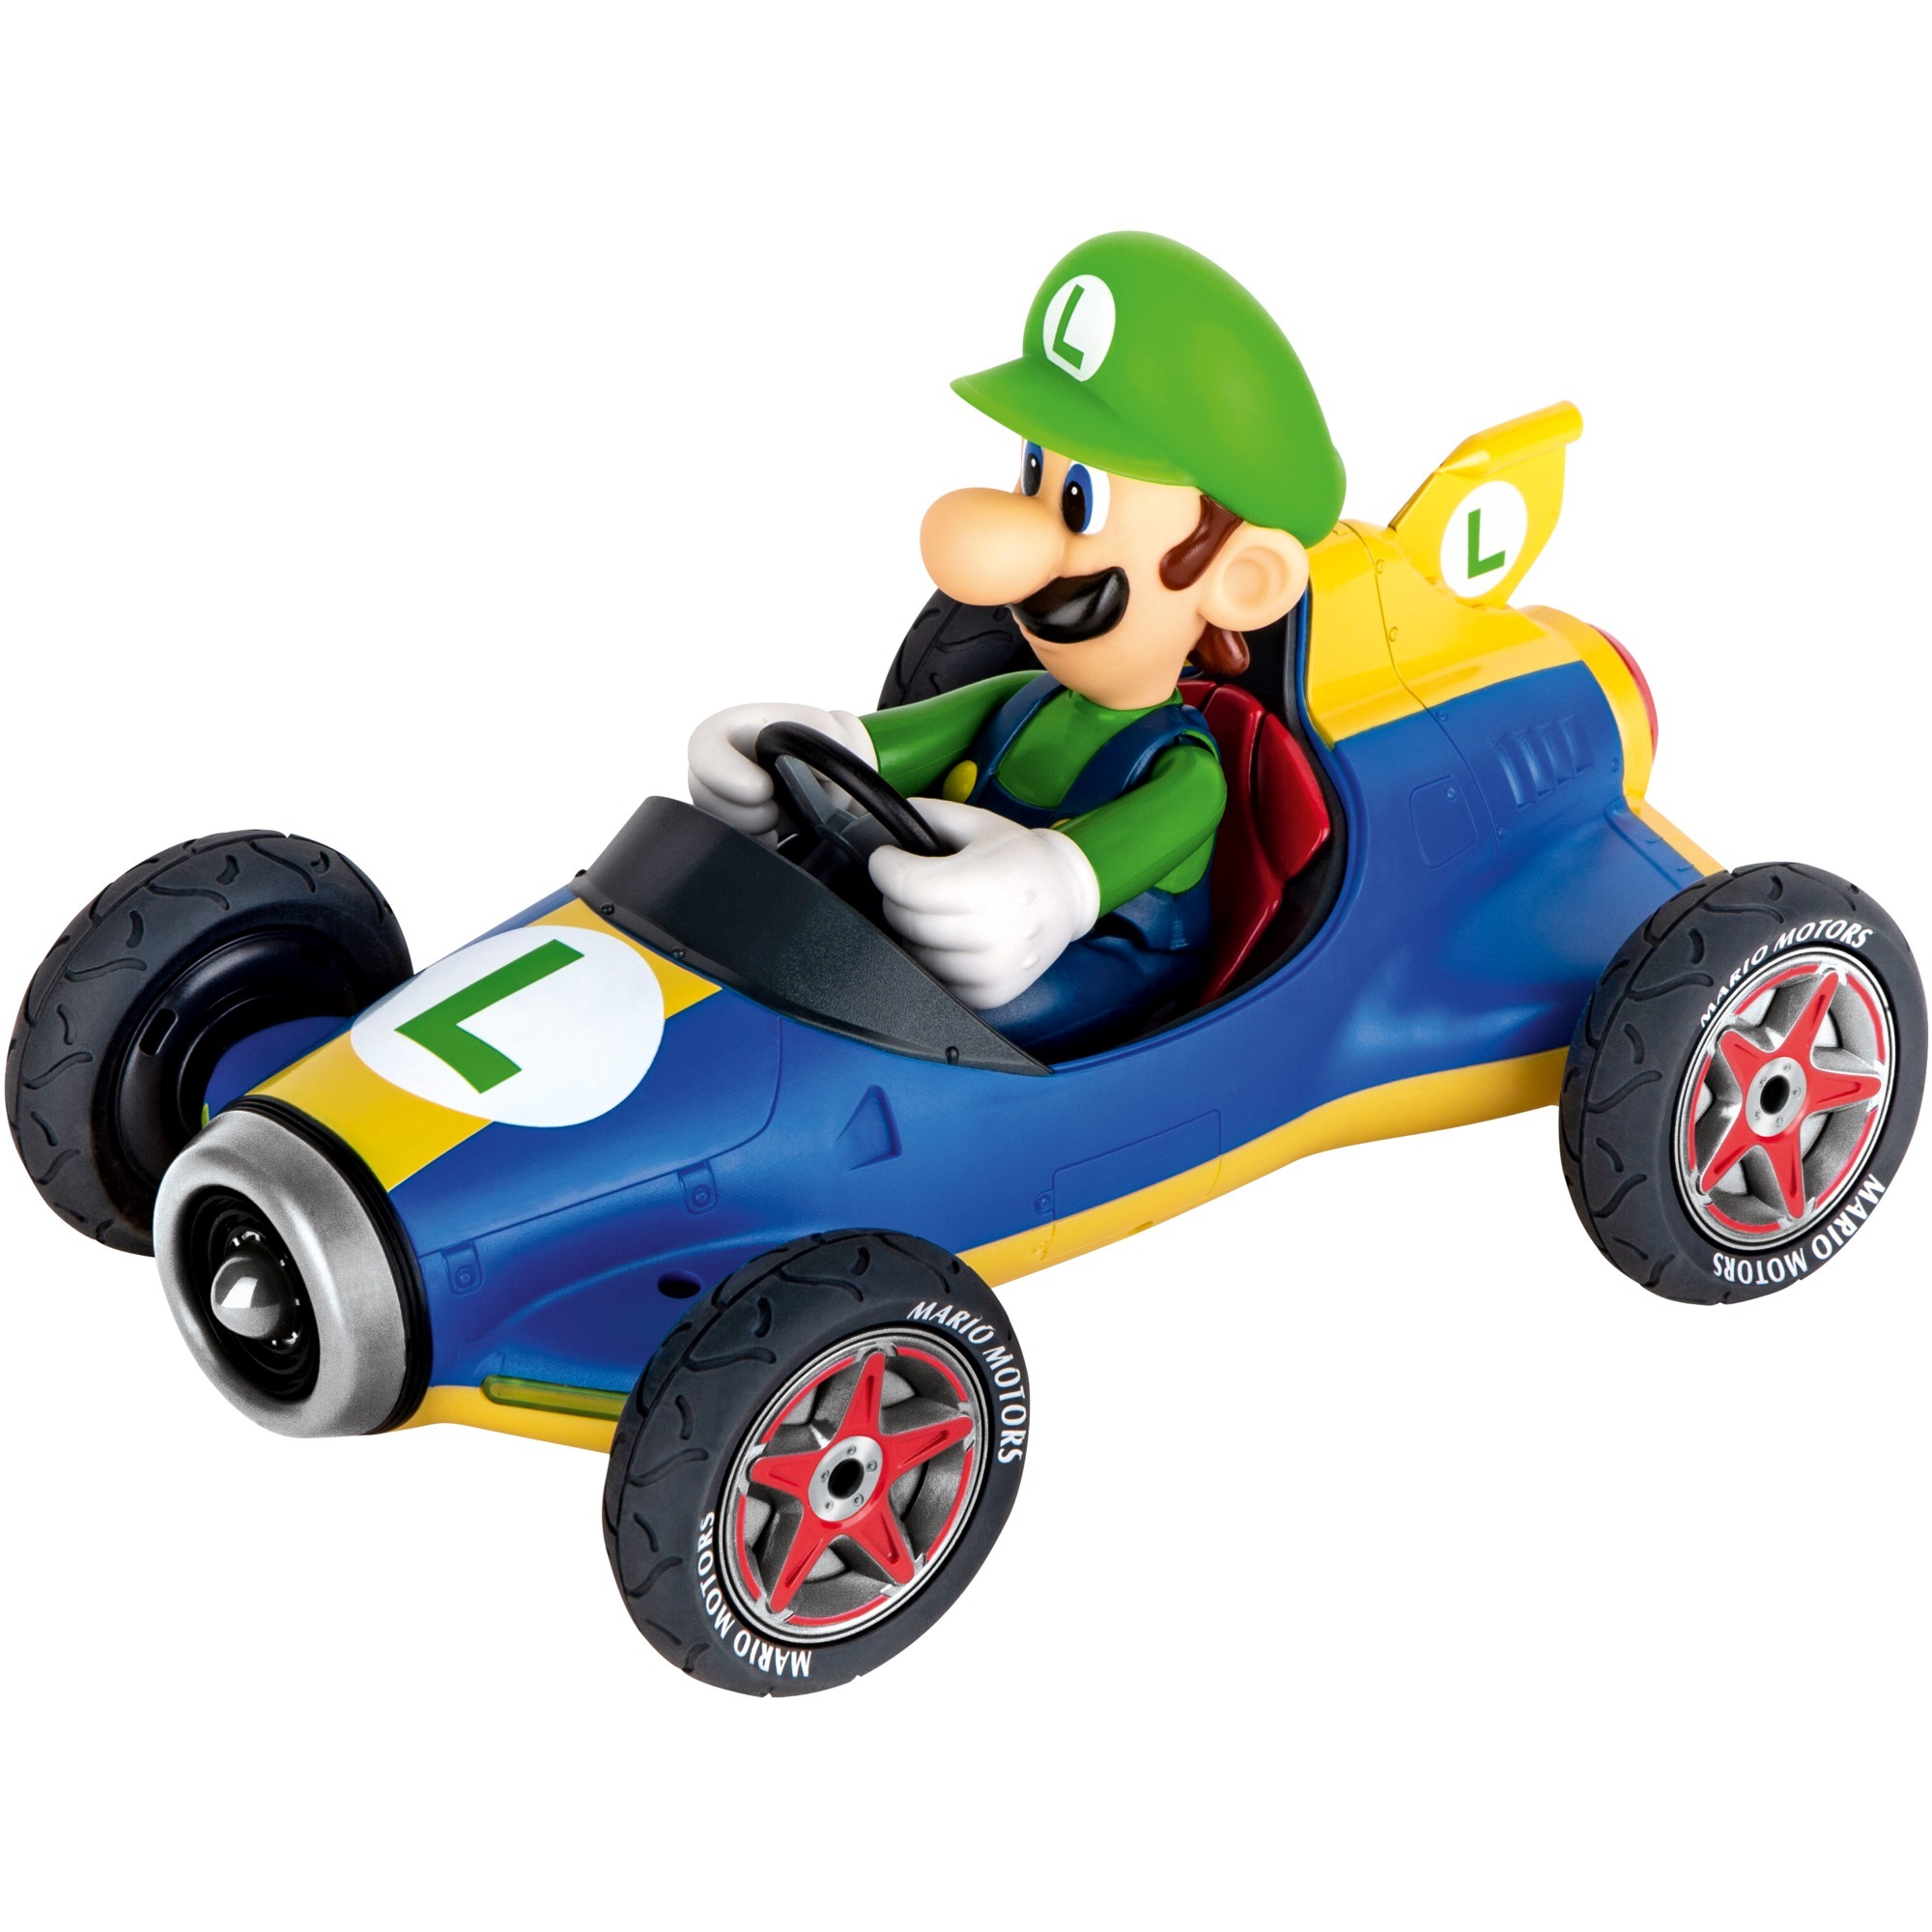 Image of Alternate - RC Mario Kart Mach 8 - Luigi online einkaufen bei Alternate